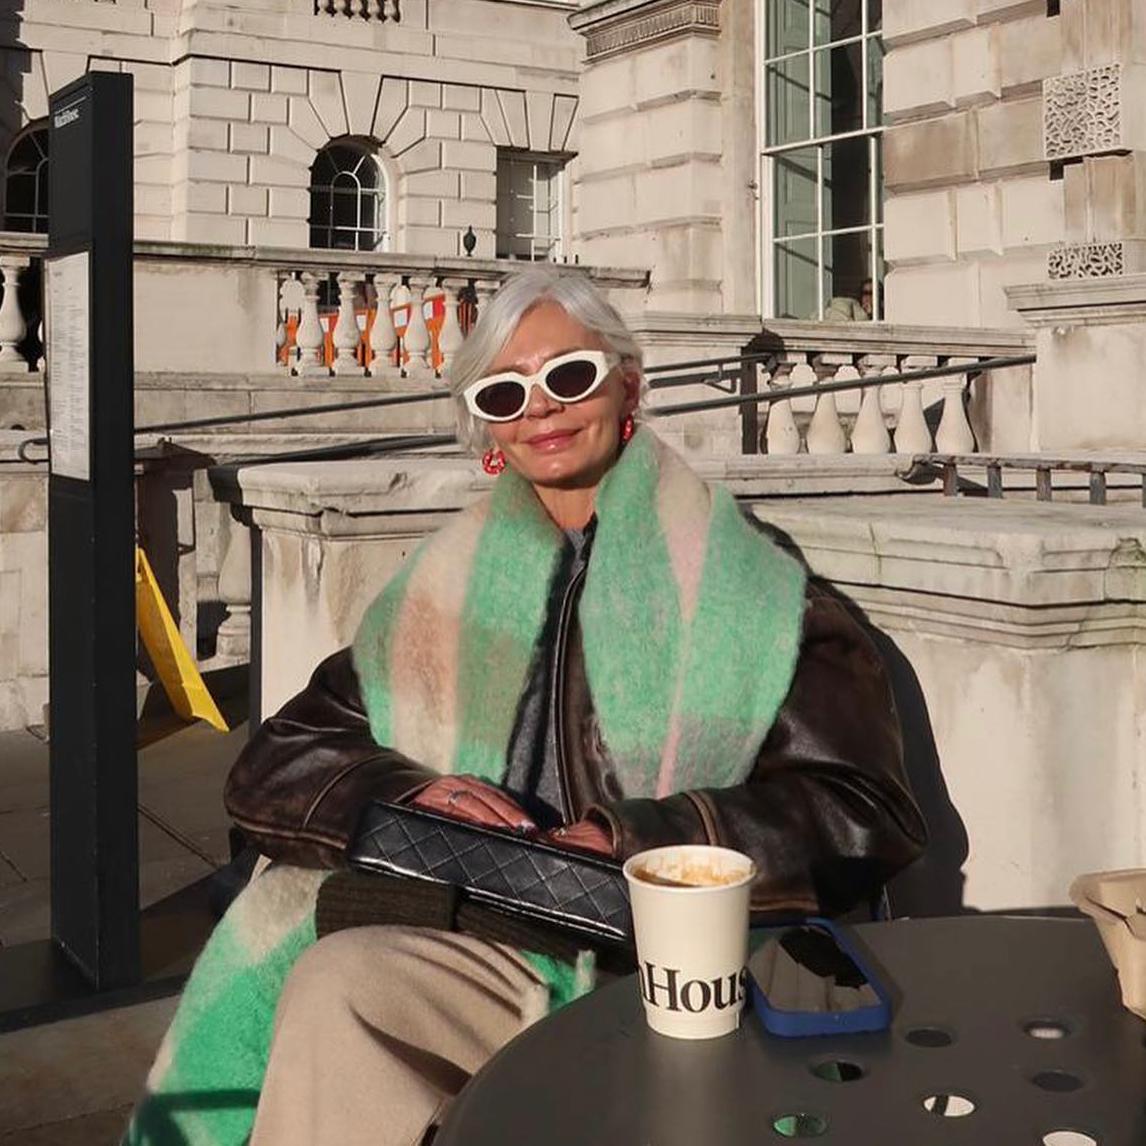 La influencer Grece Ghanem con el pelo corto blanco y flequillo de lado posa sentada en una terraza al sol